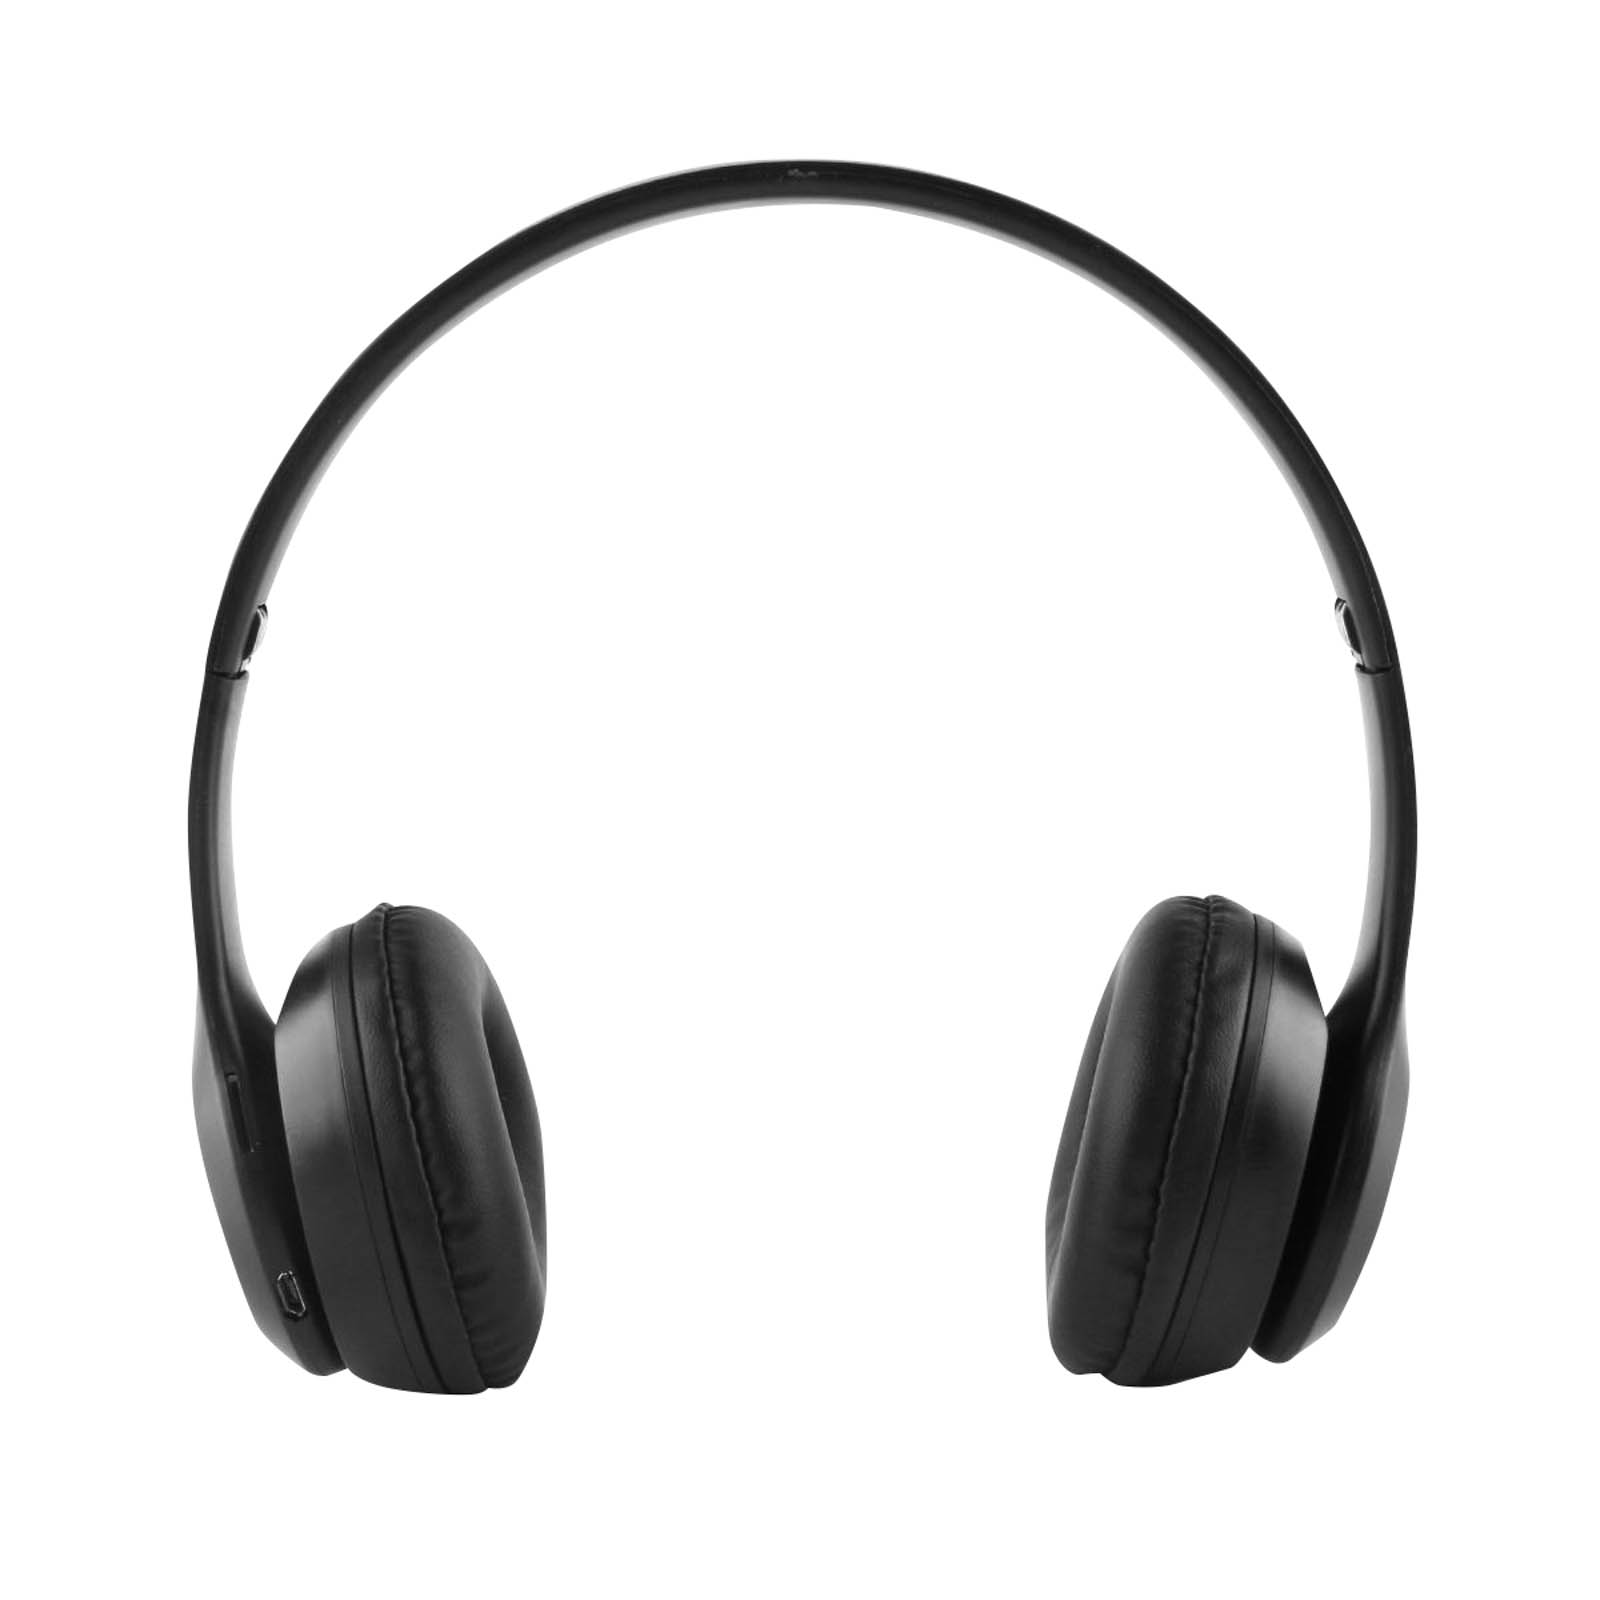 Casque Bluetooth sans fil pliable P47 avec prise audio 3,5 mm prise en  charge MP3/FM/appel (bleu)